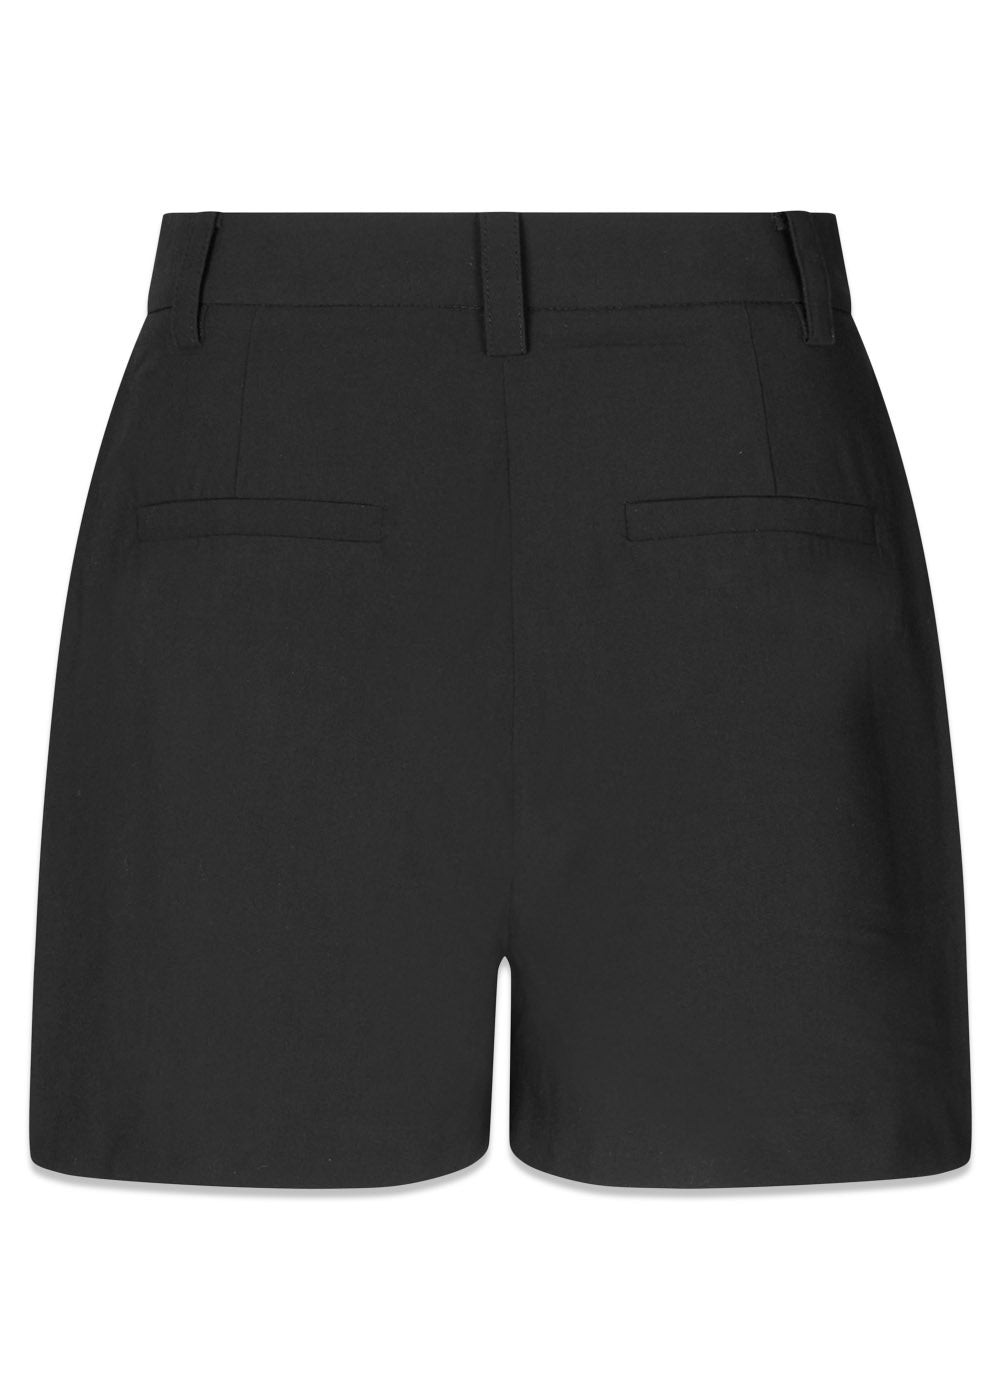 BennyMD shorts - Black